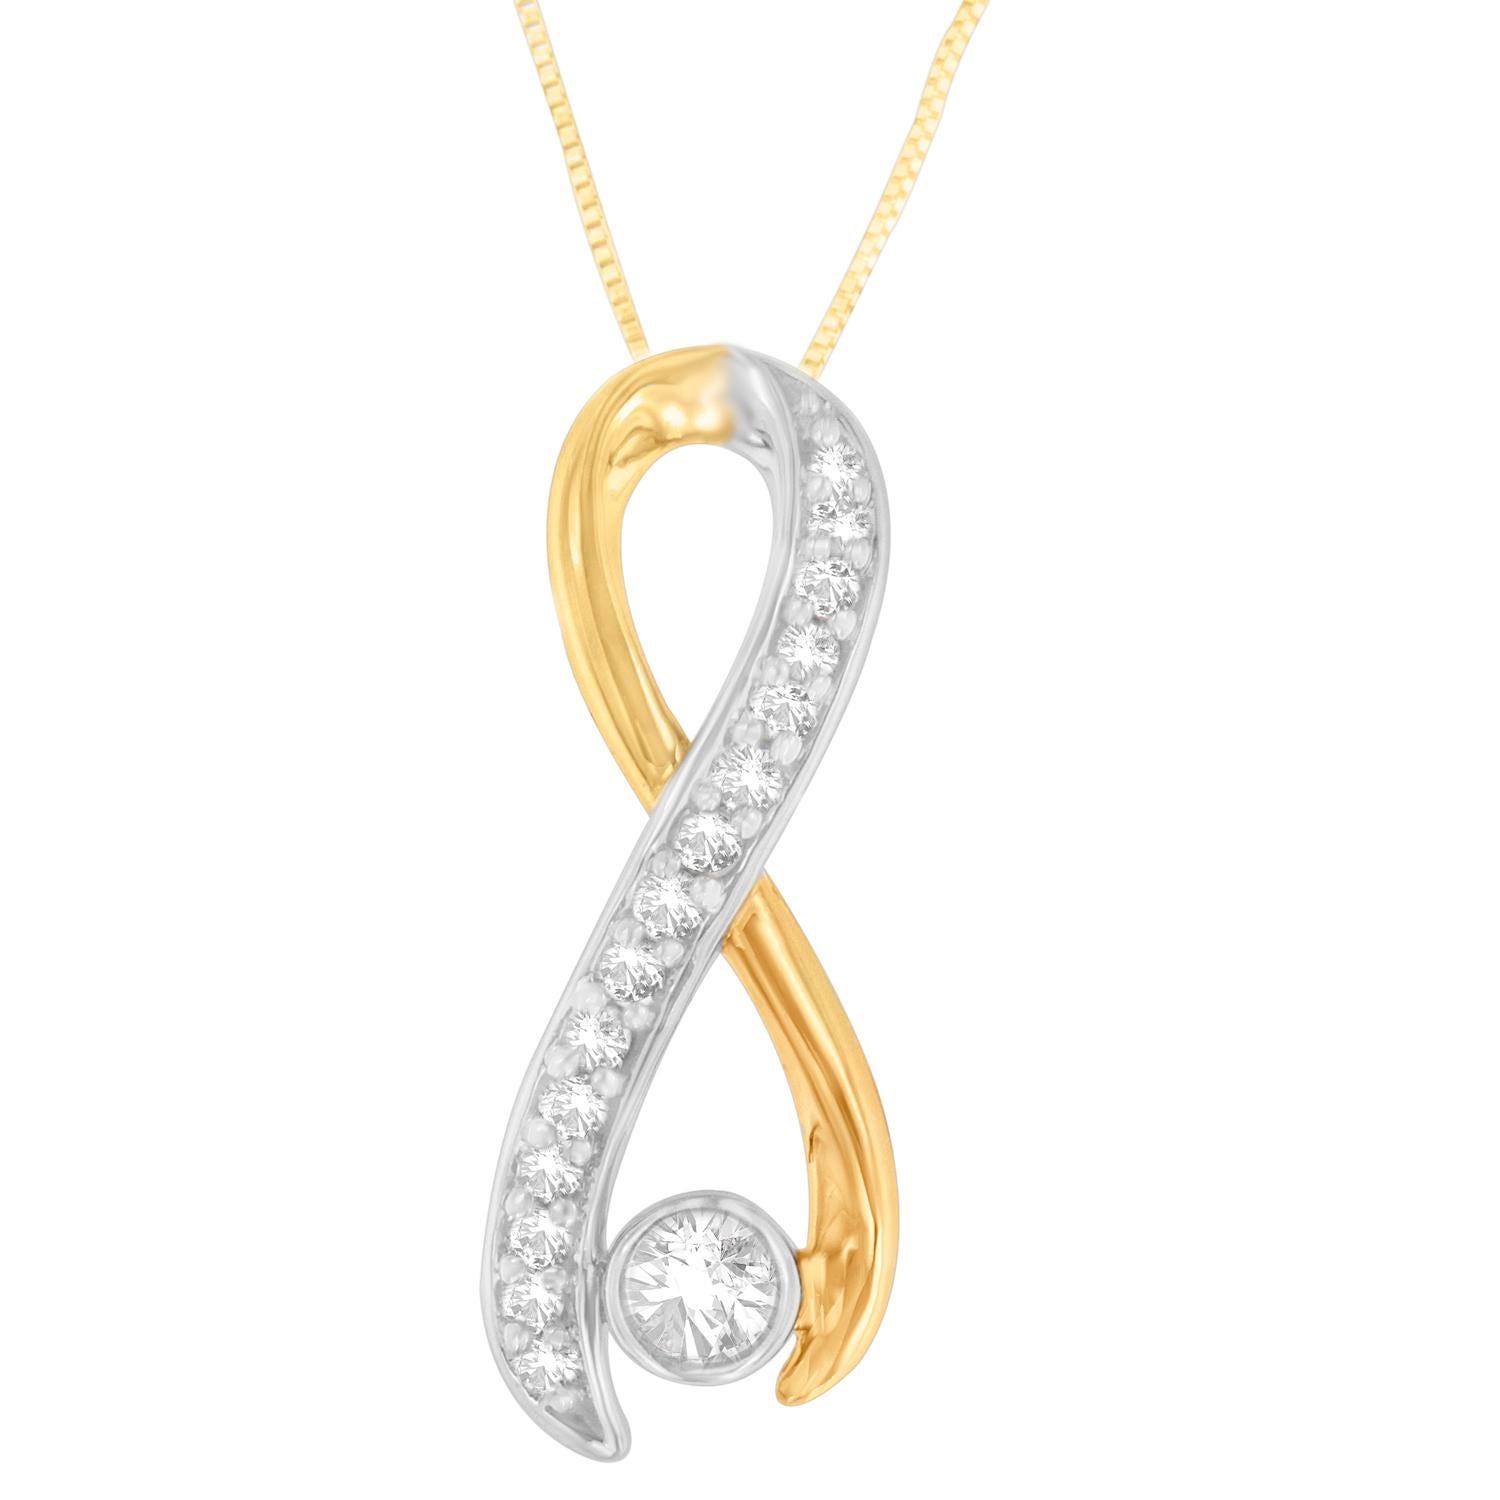 L'or jaune intemporel tombe en cascade autour d'un tourbillon d'or blanc orné de diamants pour créer une forme de spirale étincelante reliée par une seule pierre ronde à la base. Avec son style et son élégance, ce collier à pendentif est un must